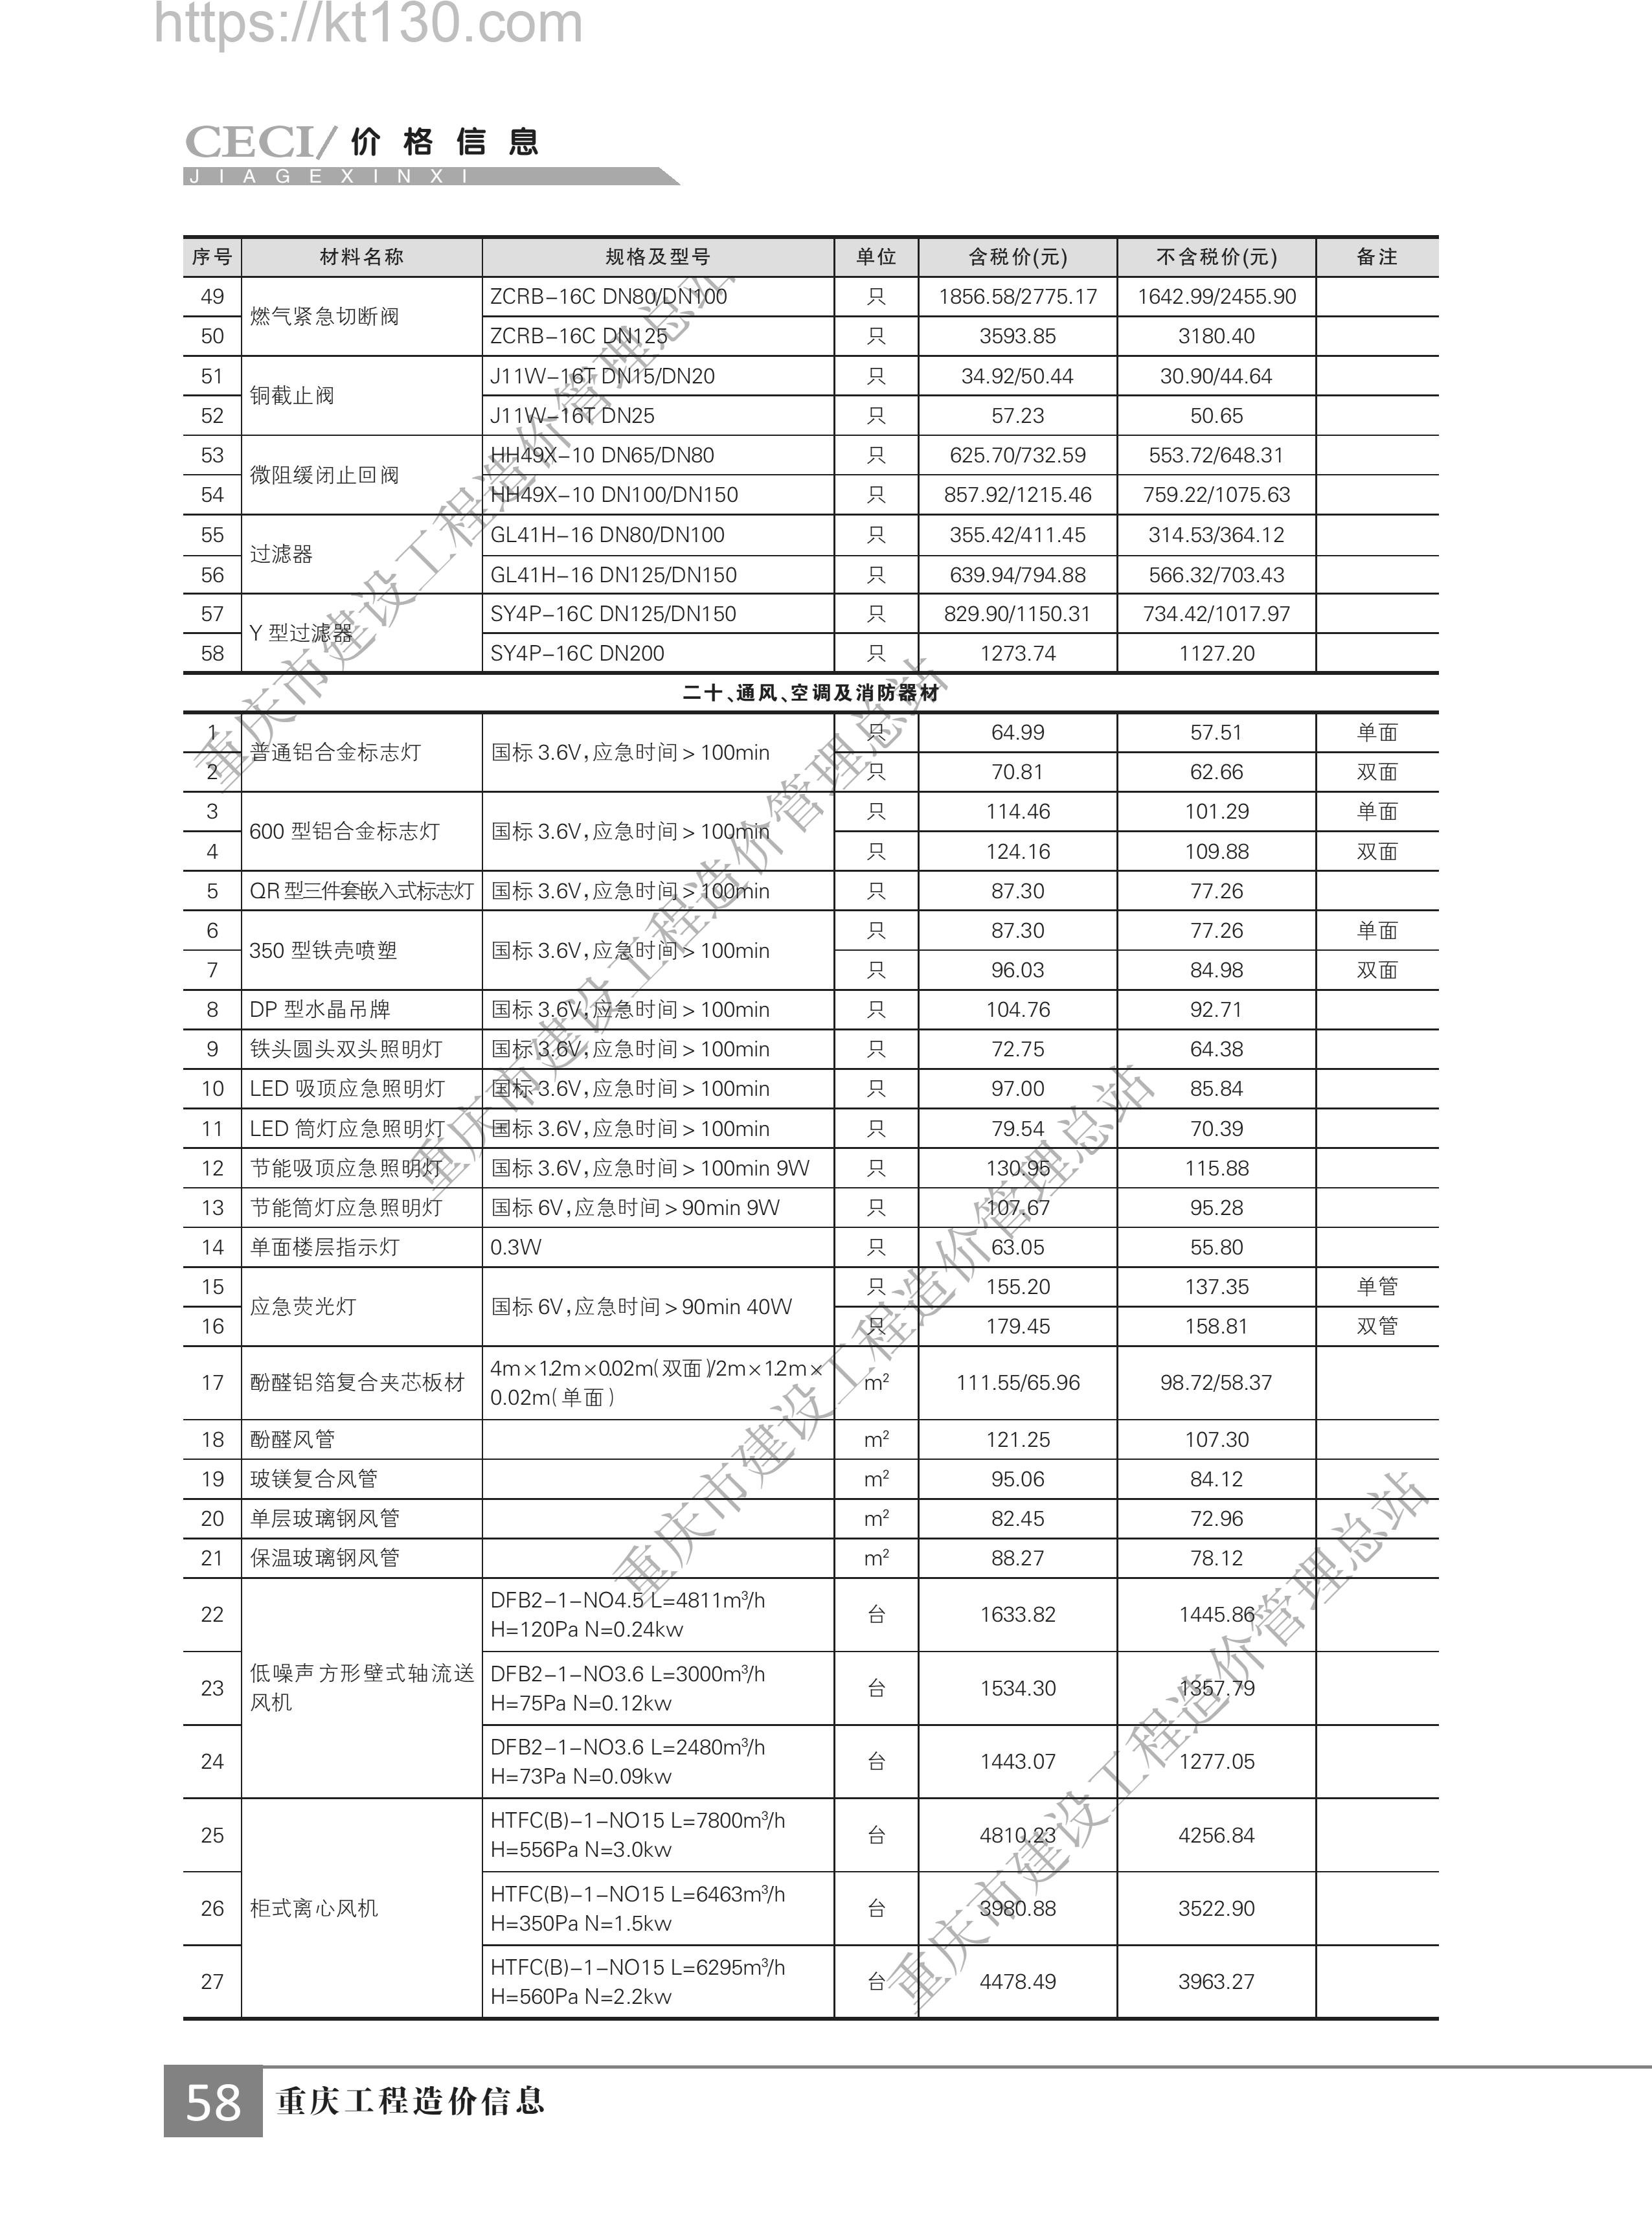 重庆市2022年第二期建筑材料价_通风、空调及消防器材